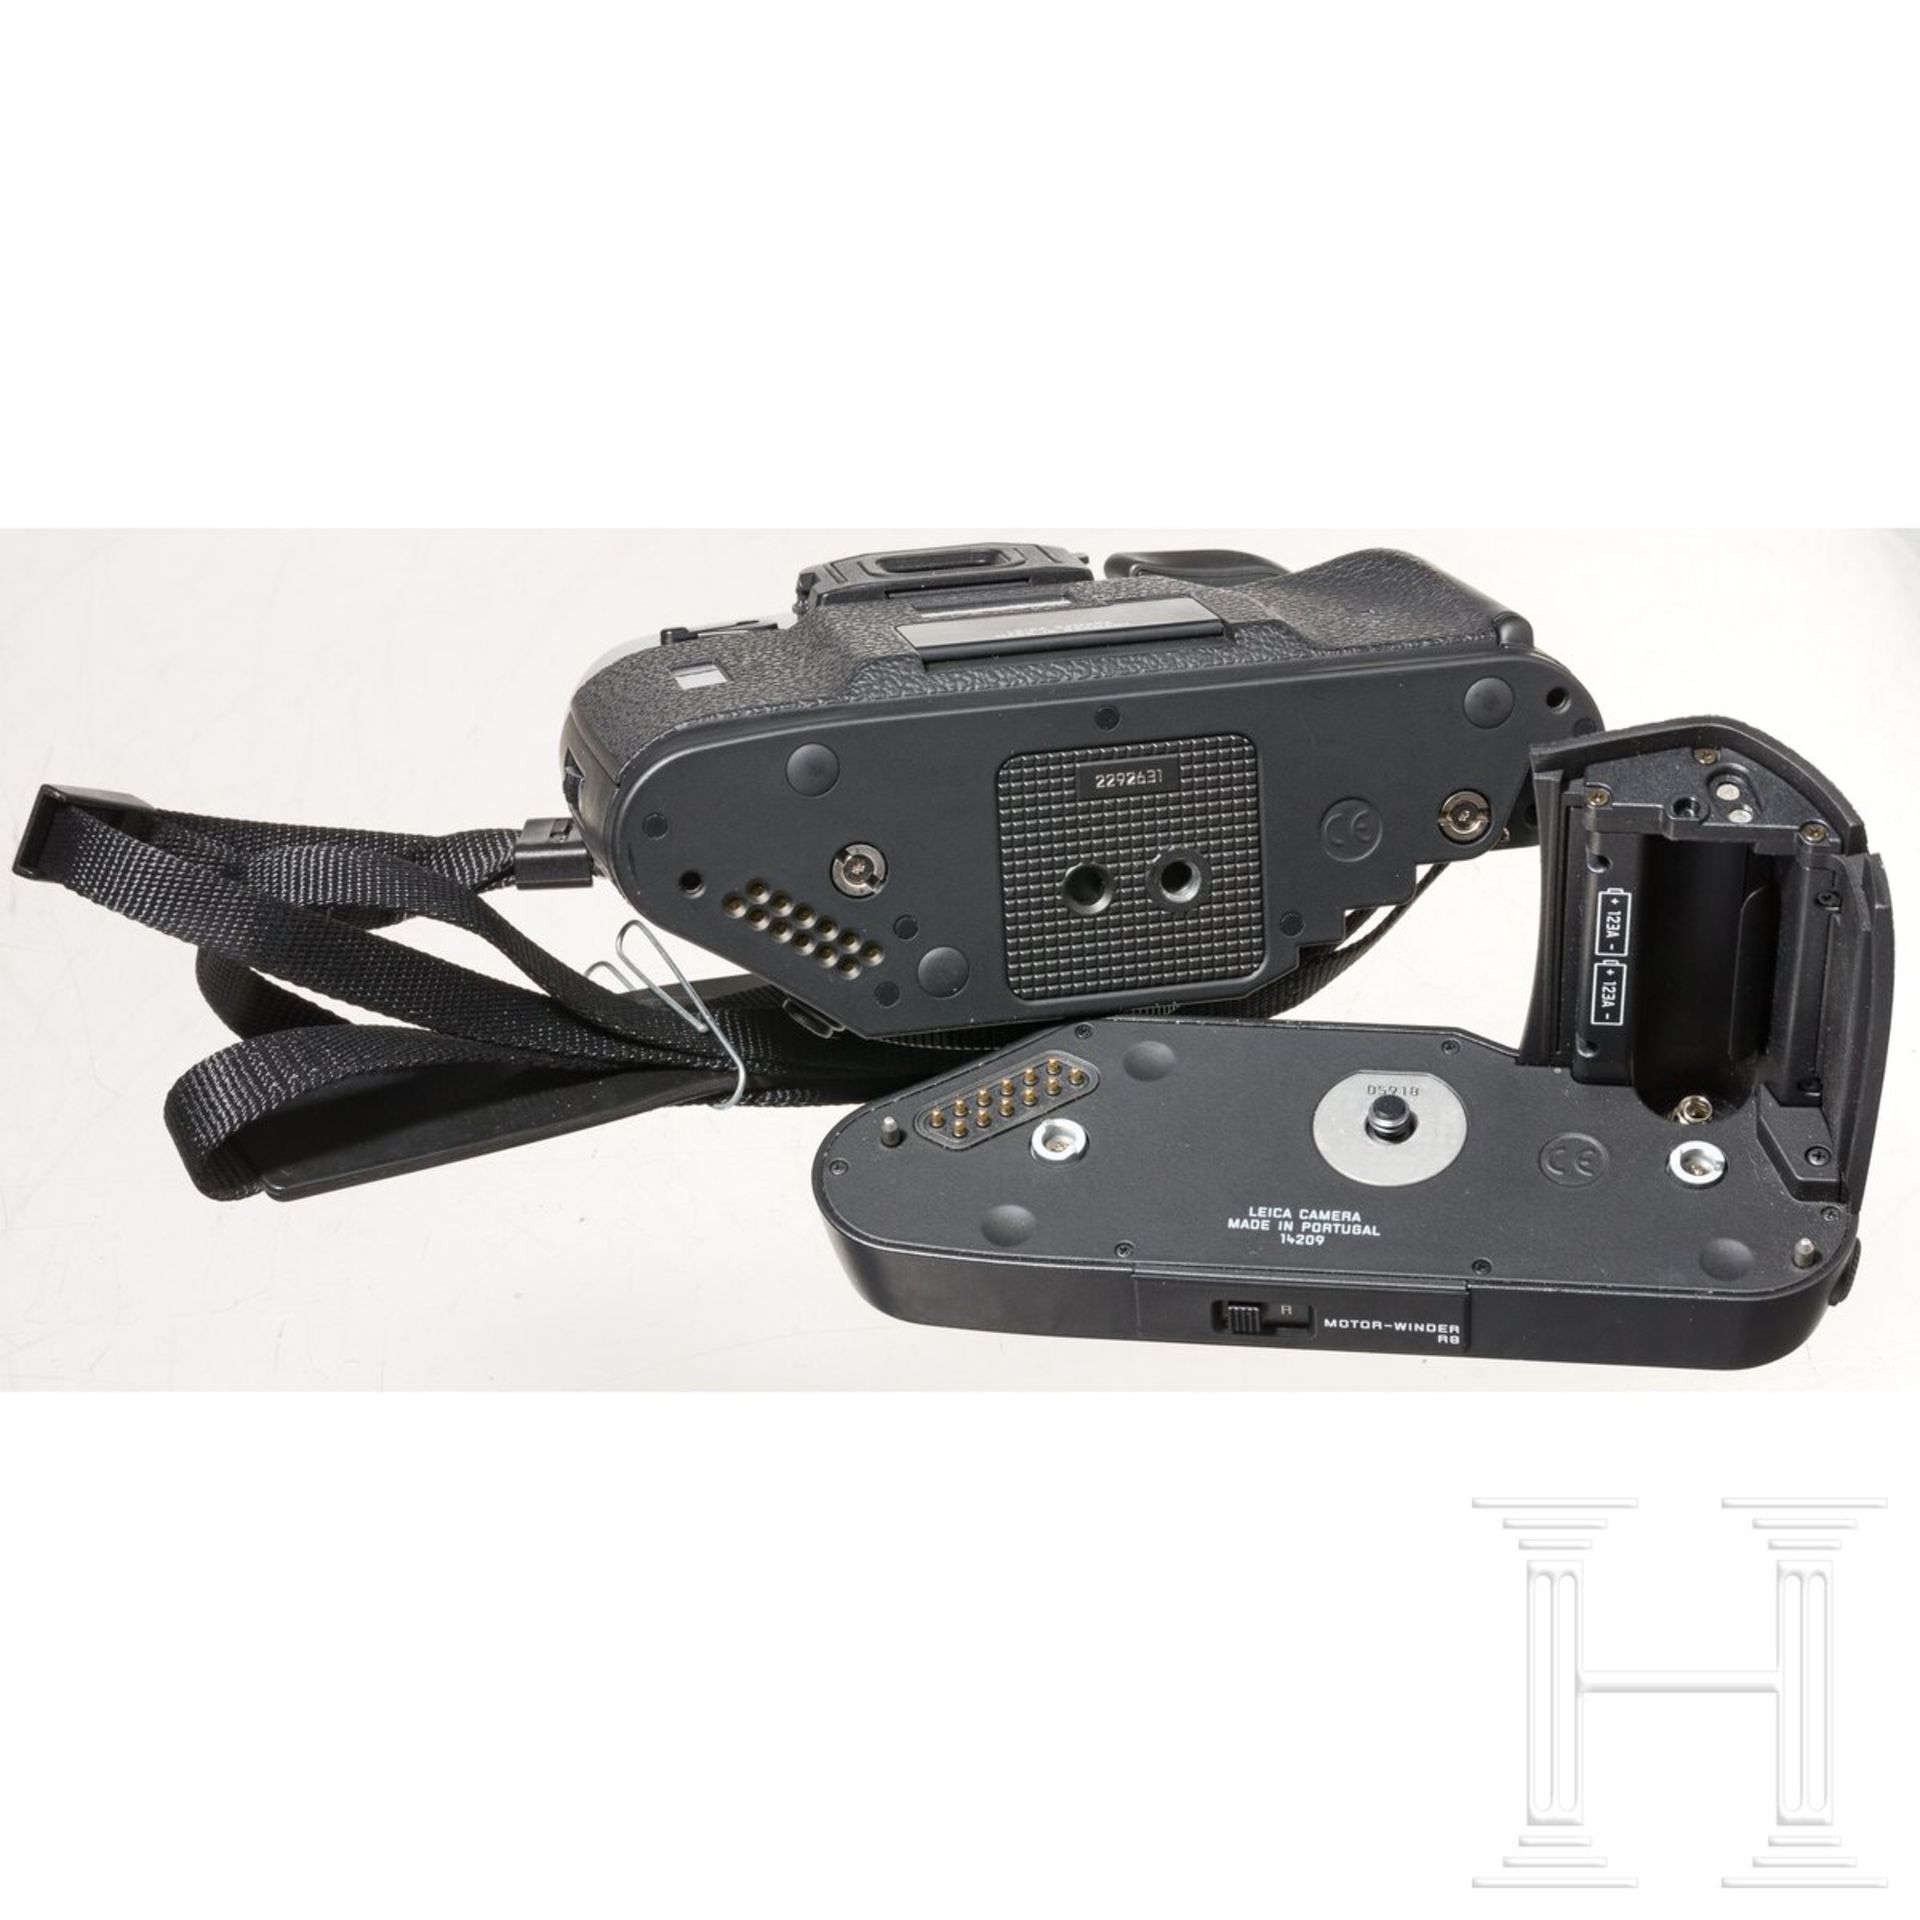 Kameragehäuse Leica R8, mit Motor-Winder, Tragekoffer - Image 5 of 6